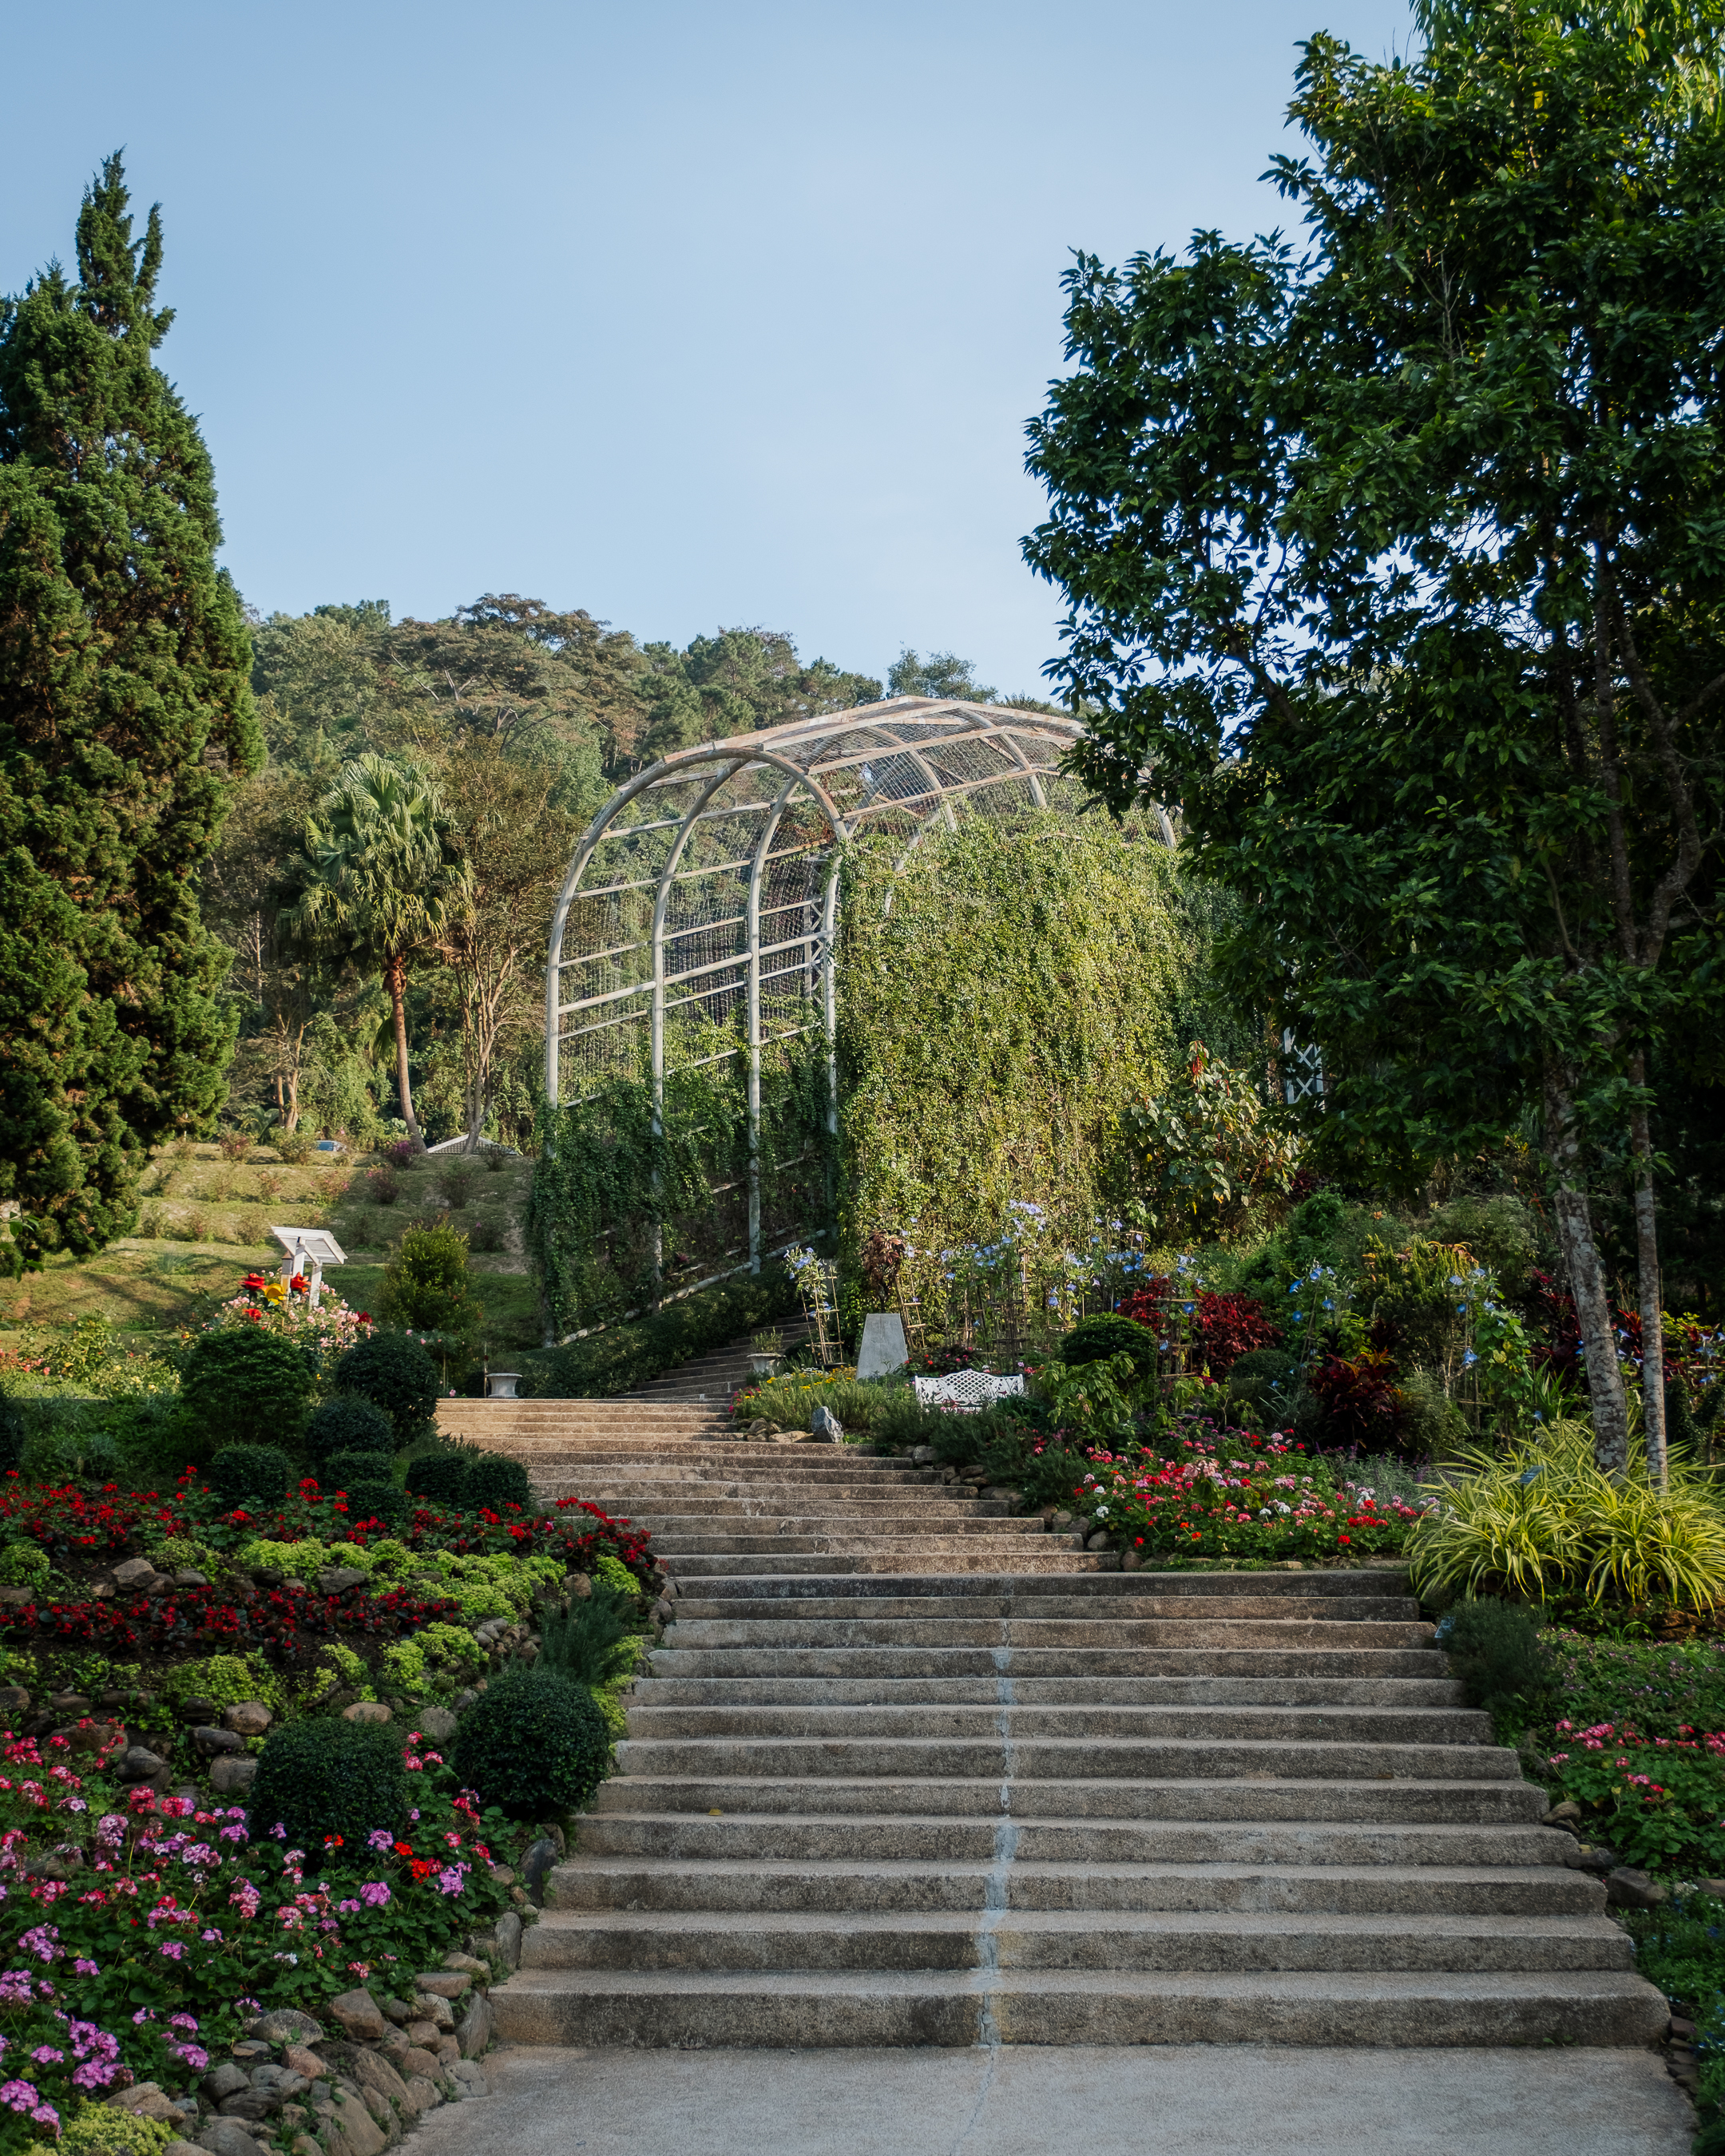 Queen Sirikit Botanic Garden in Chiang Mai